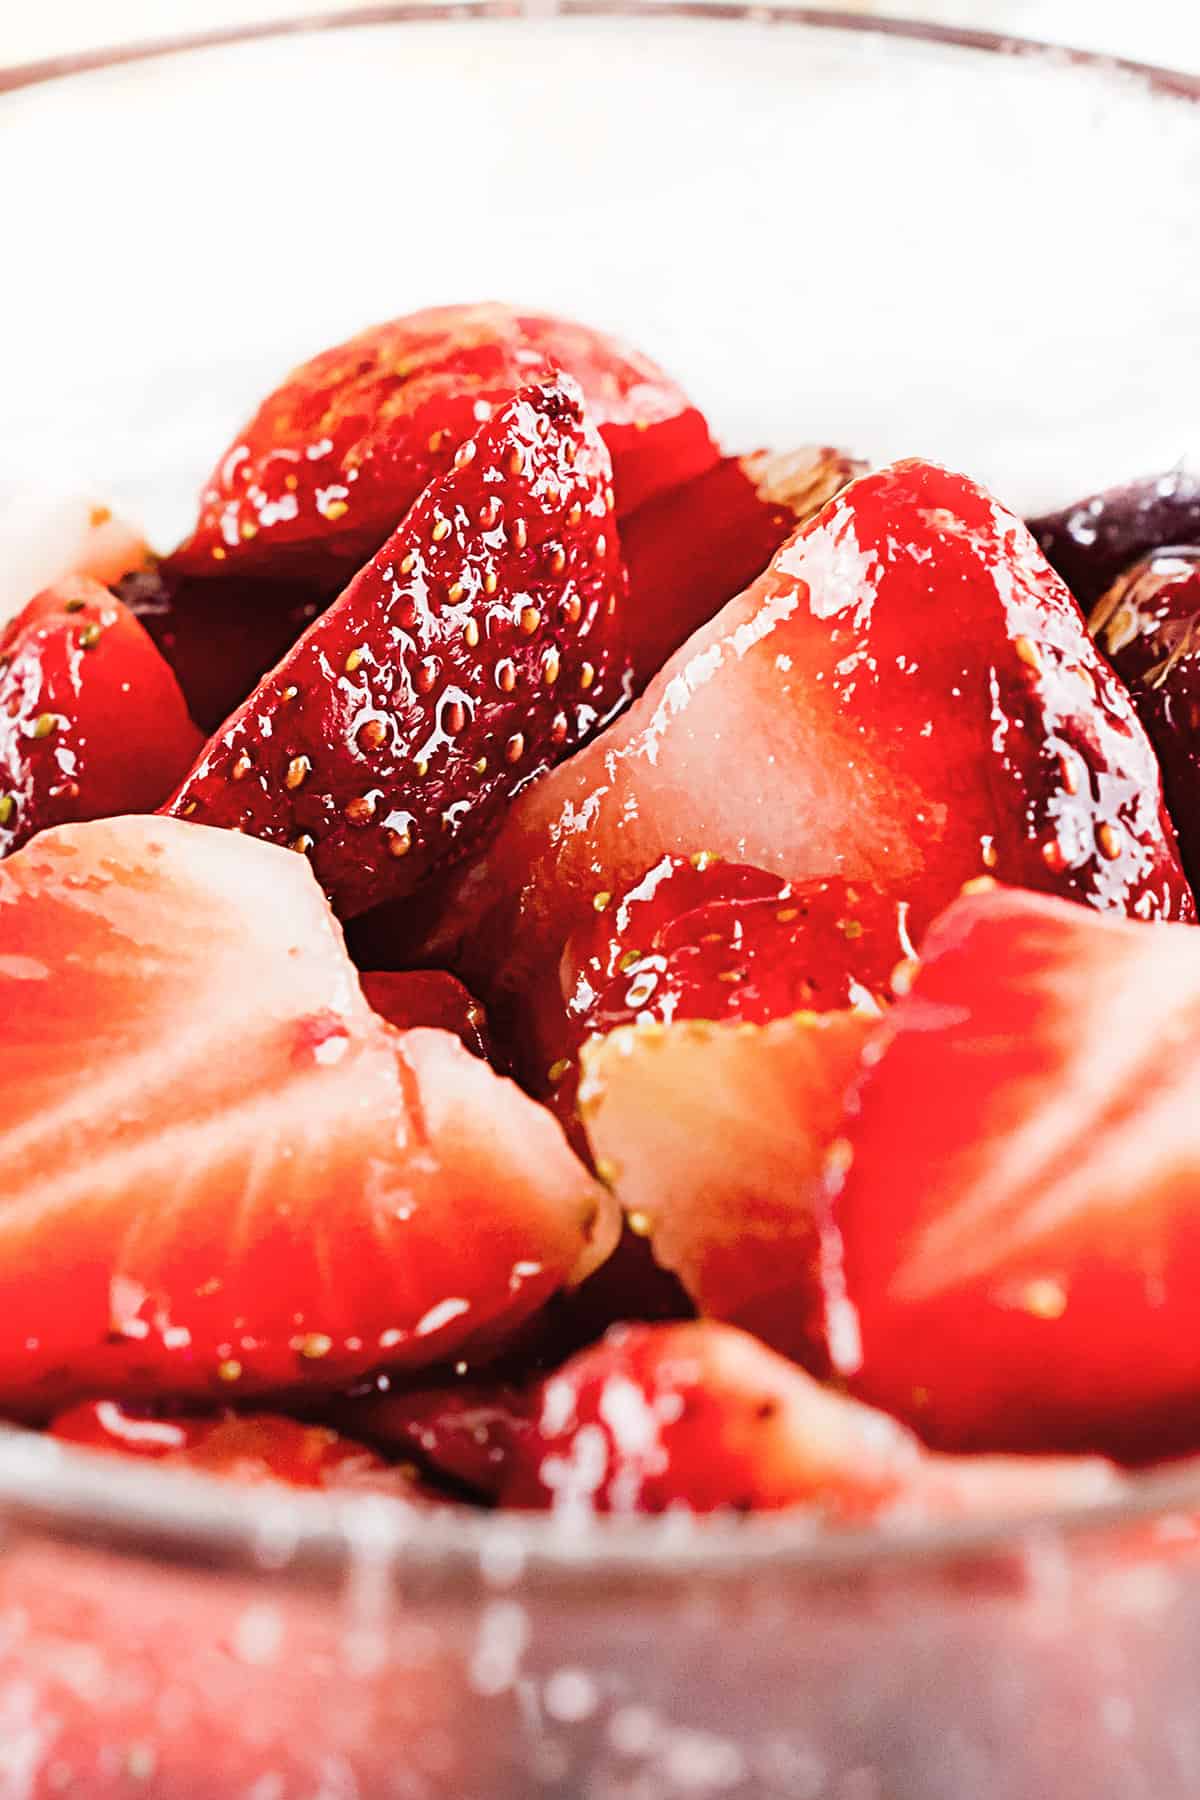 macerated-strawberries-with-sugar-erren-s-kitchen